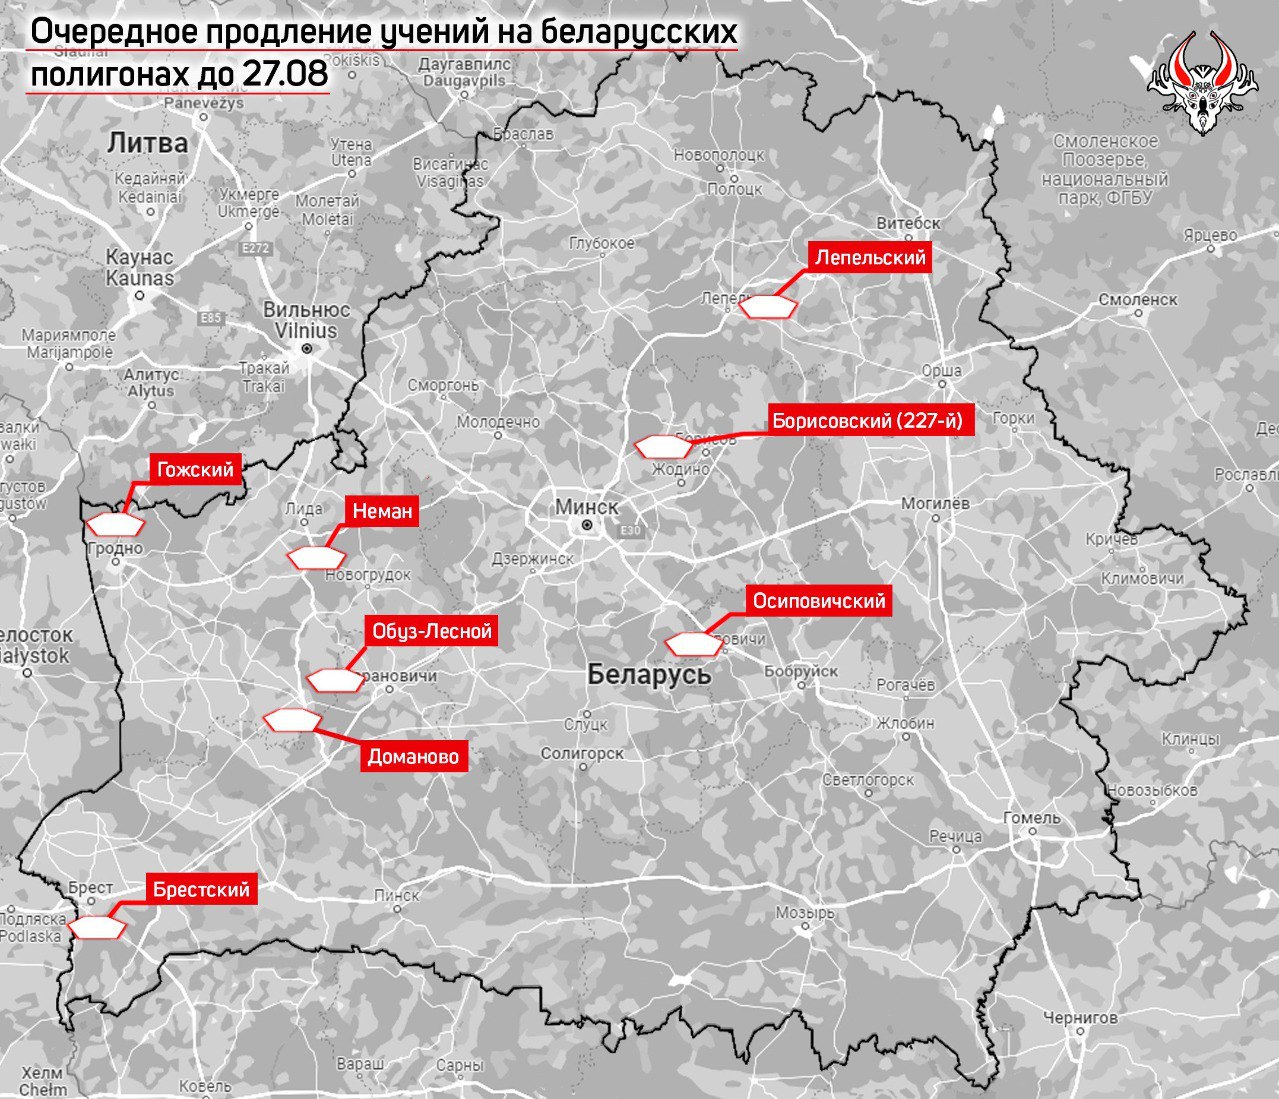 Учения белорусской армии продлены как минимум до 27 августа